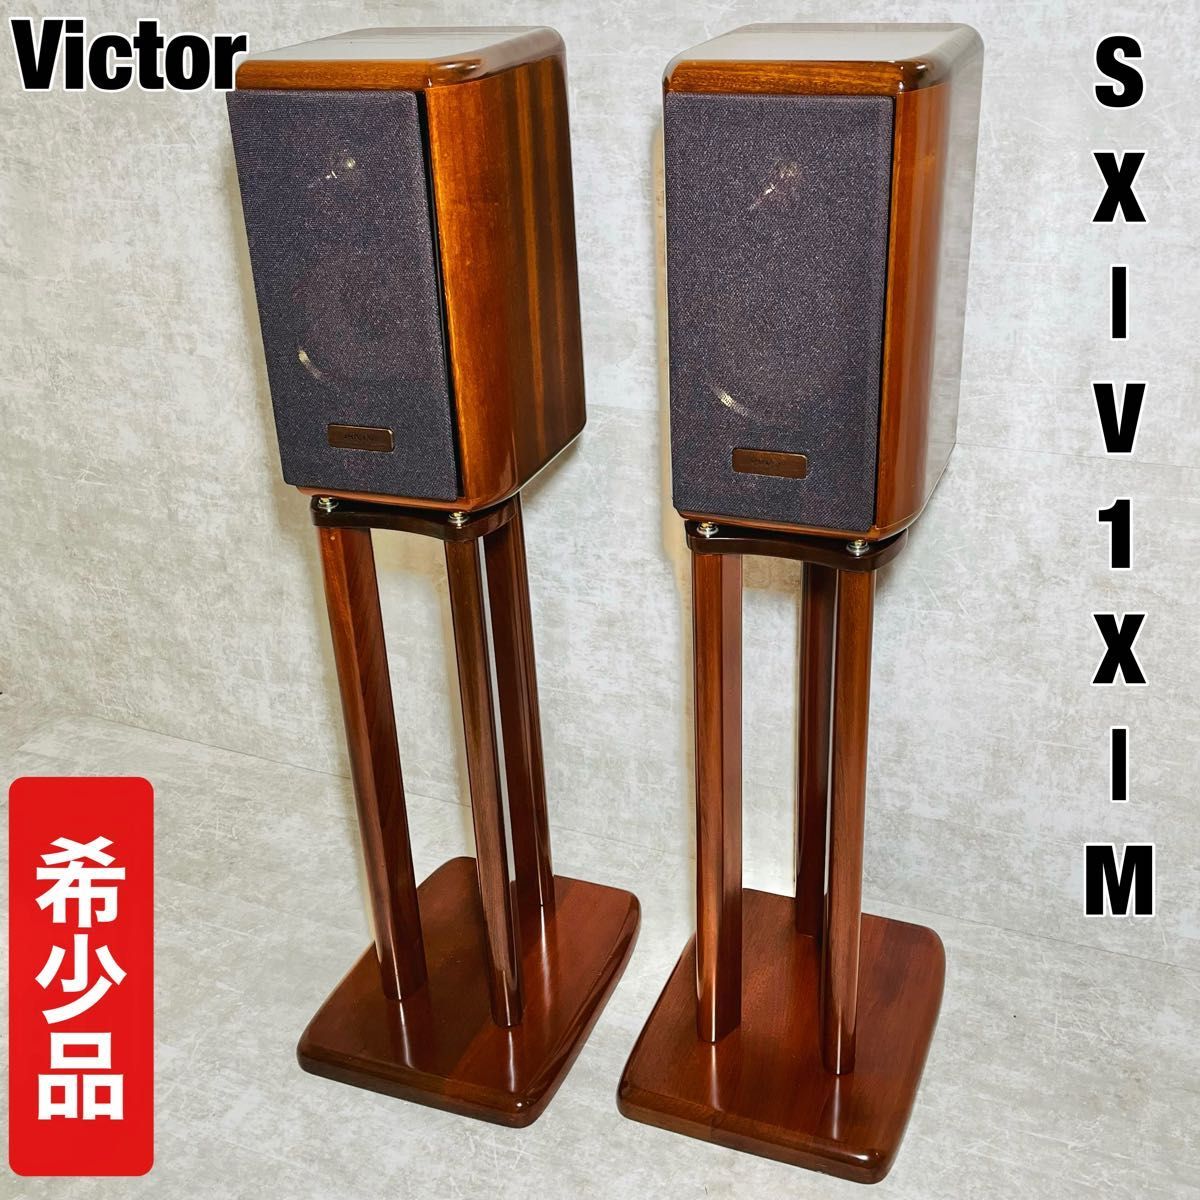 特価商品 【名機・希少】Victor ビクター SX-V1X-M スピーカー ペア